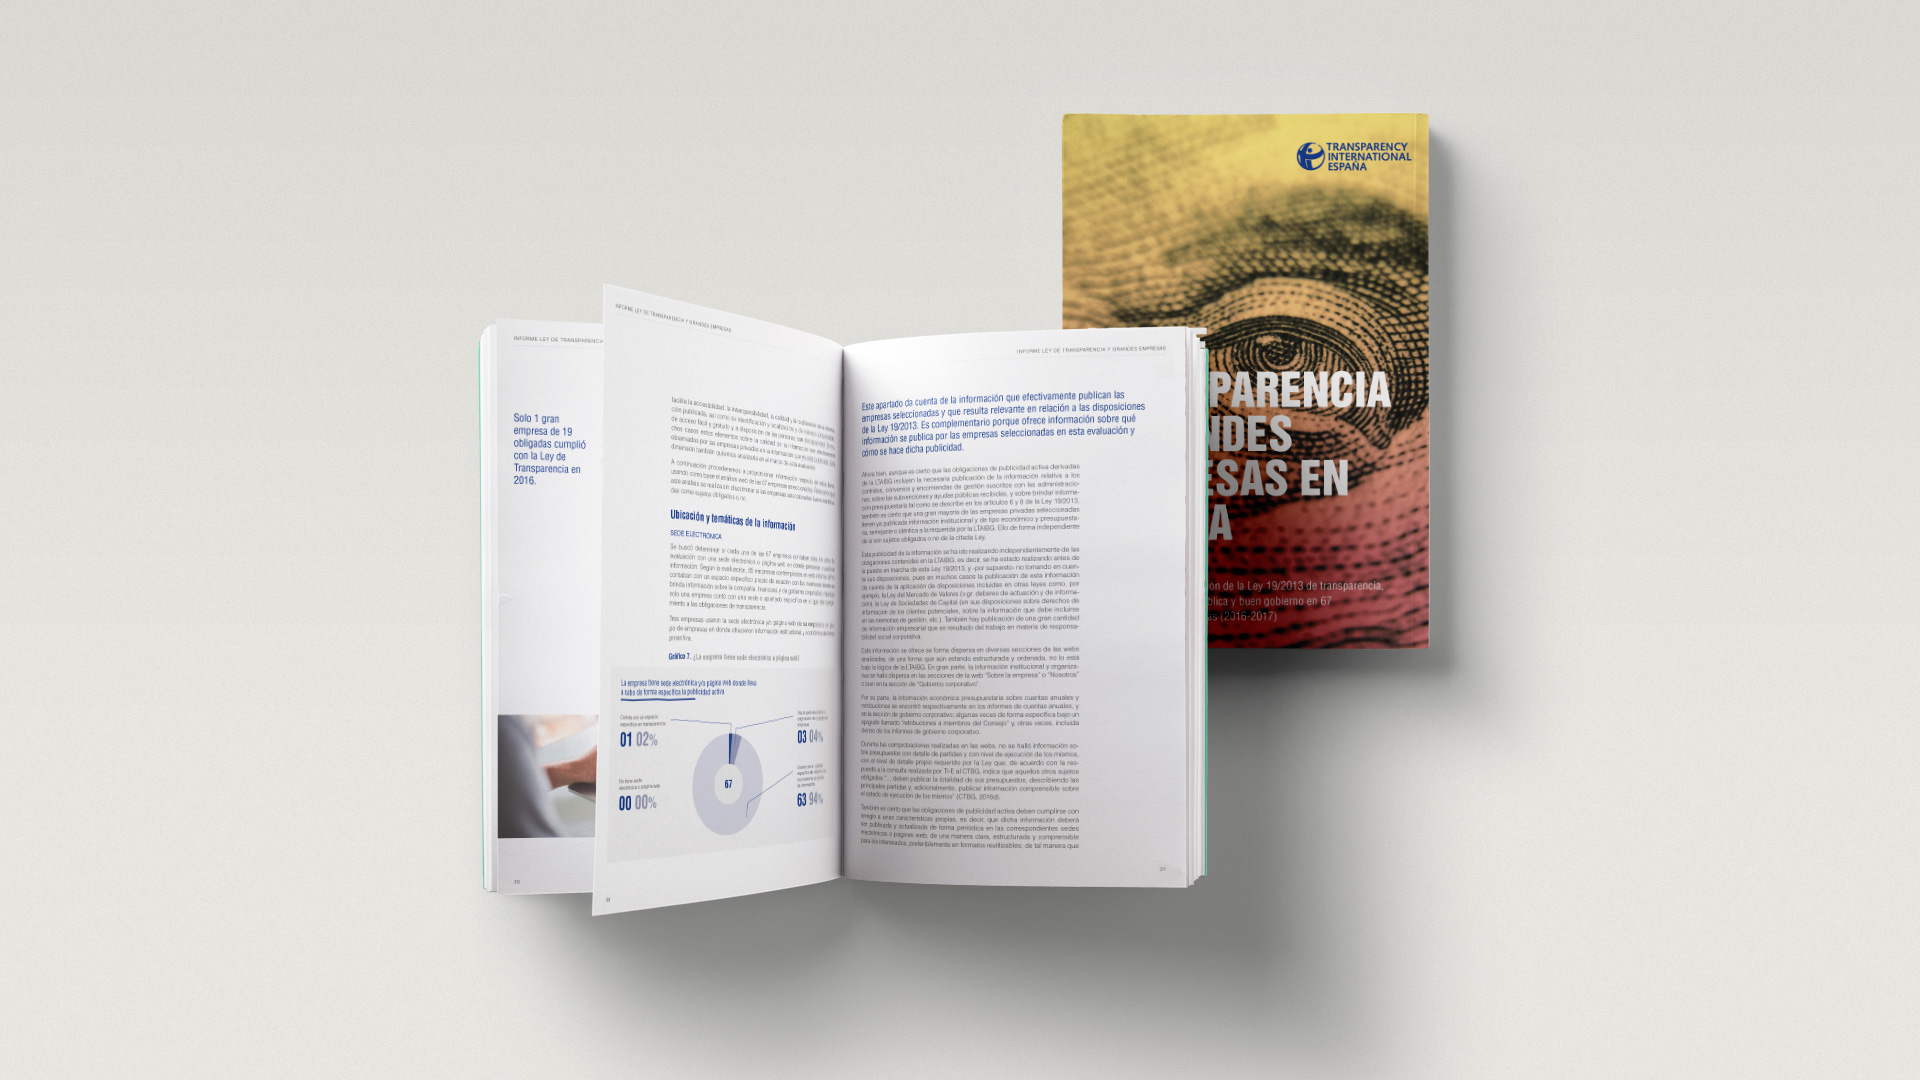 Diseño editorial para Transparencia Internacional